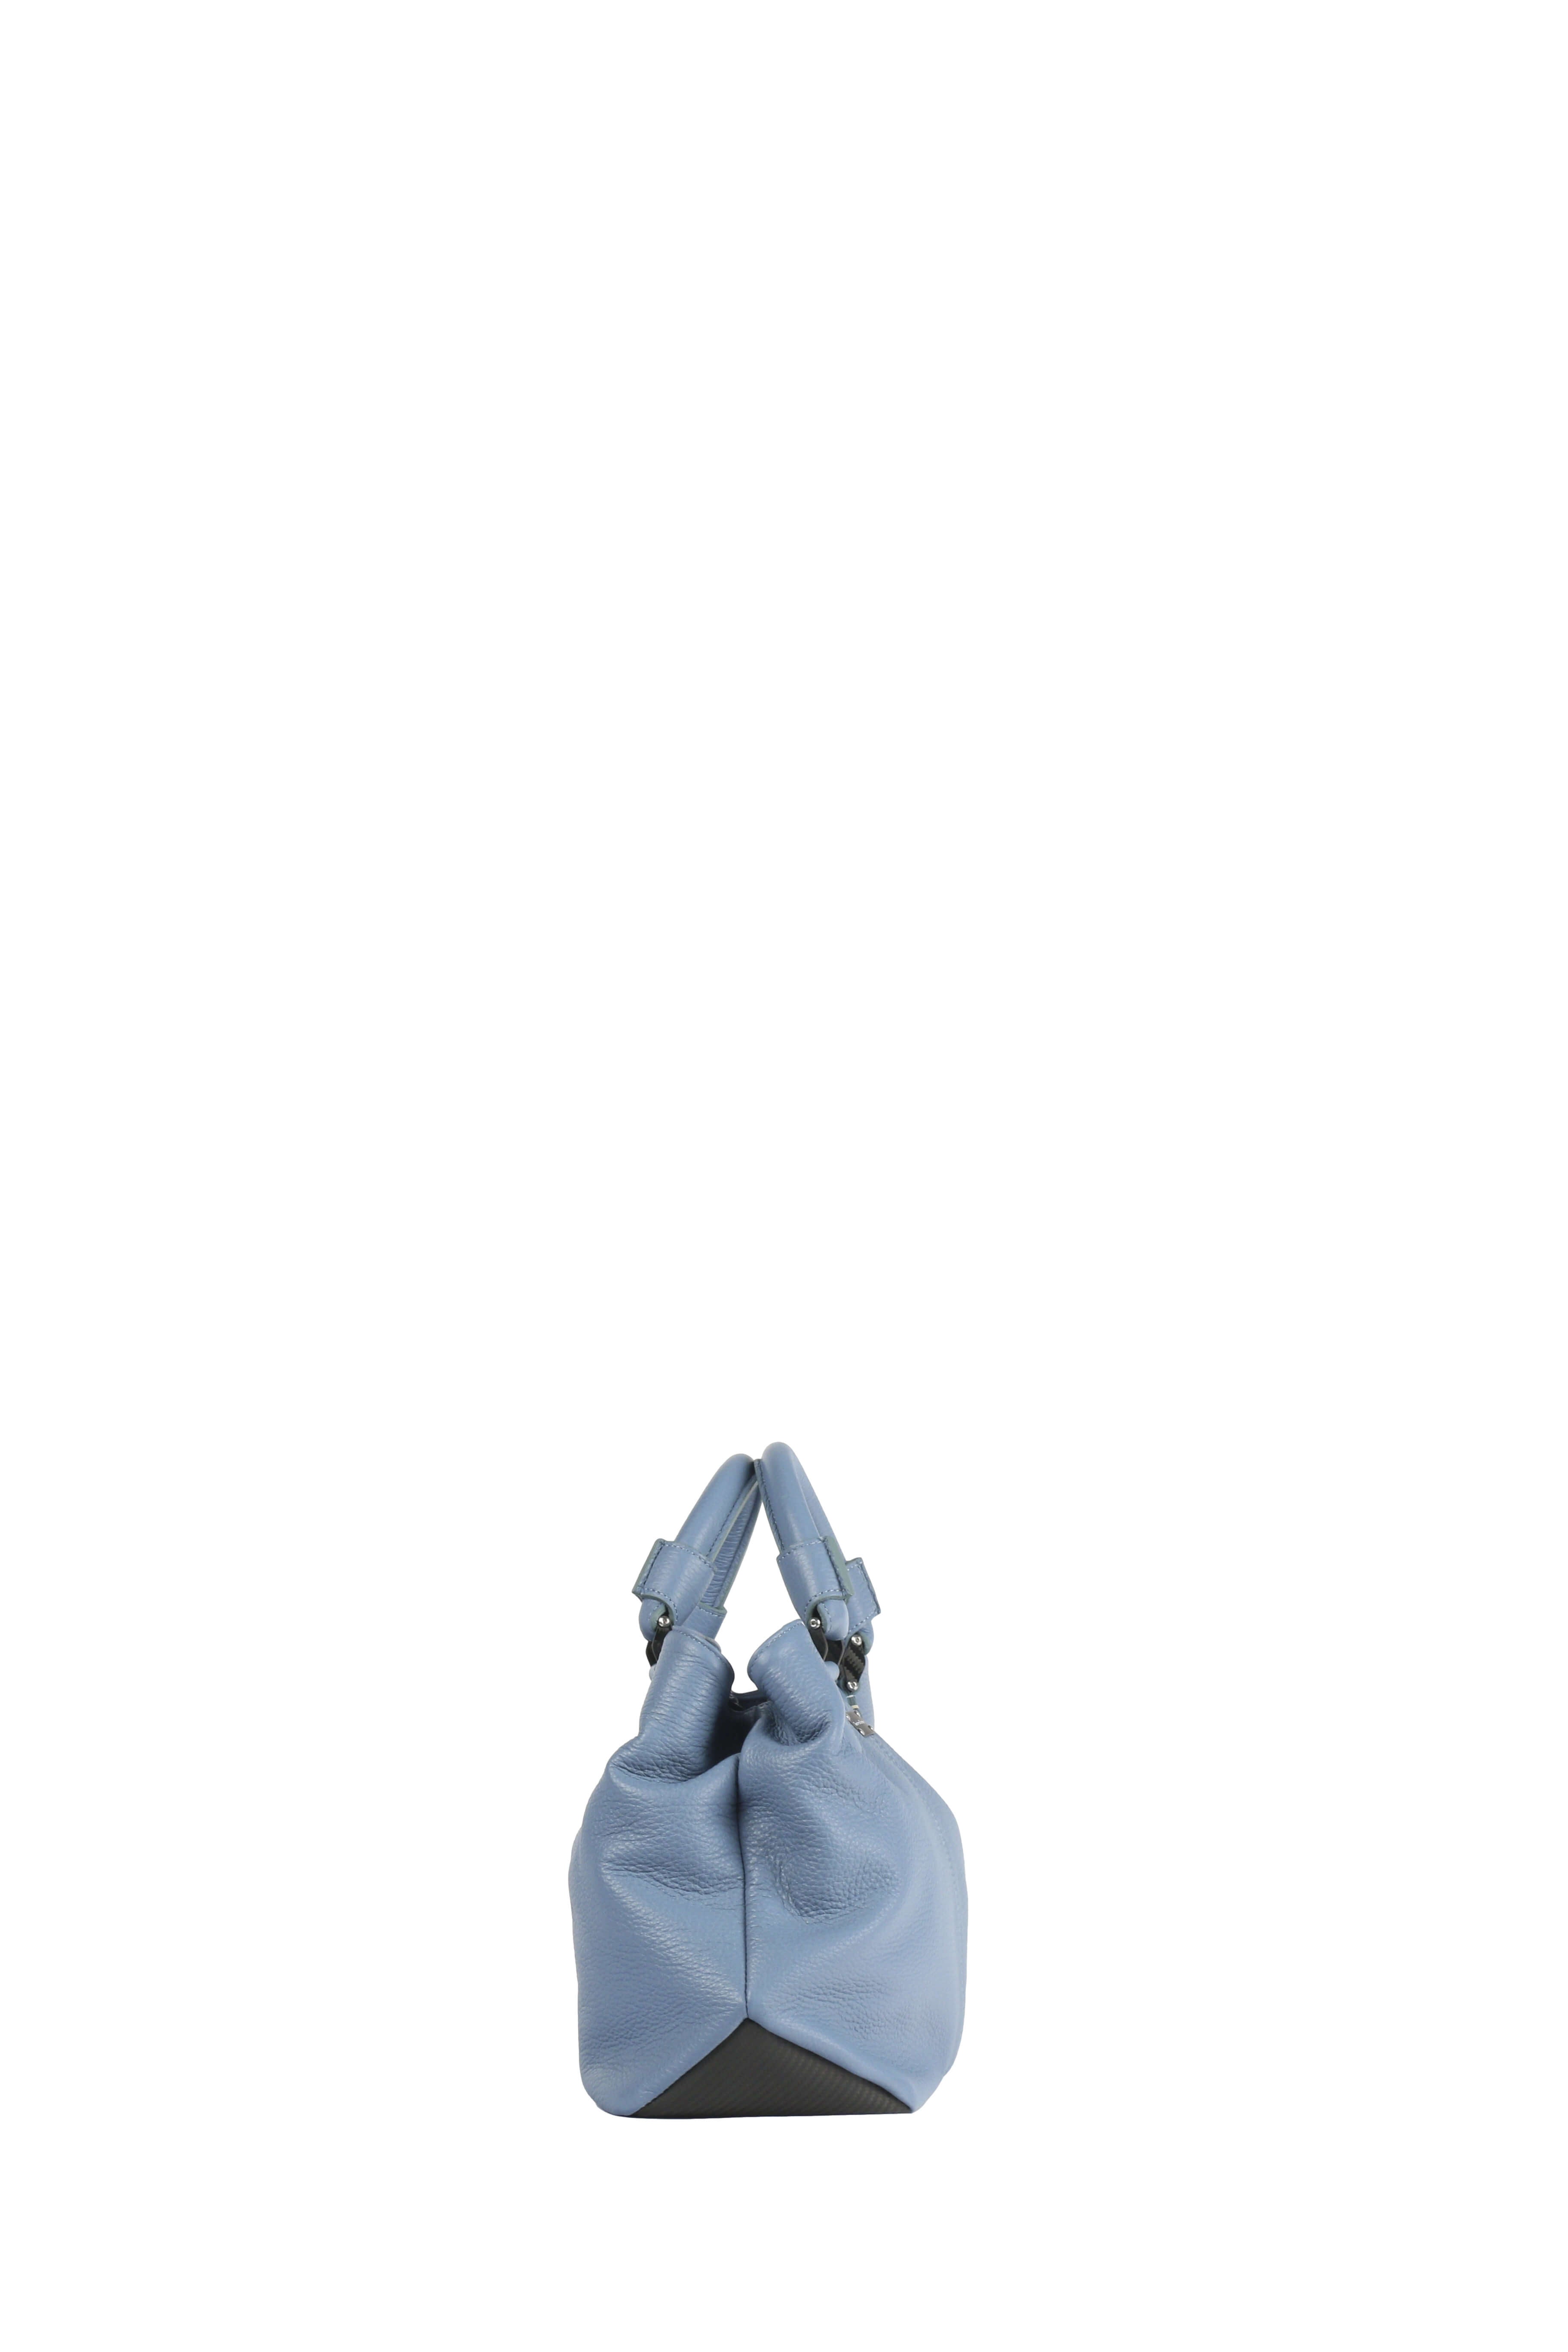 Ormeggia Deer Leather Hand Bag, Sky blue